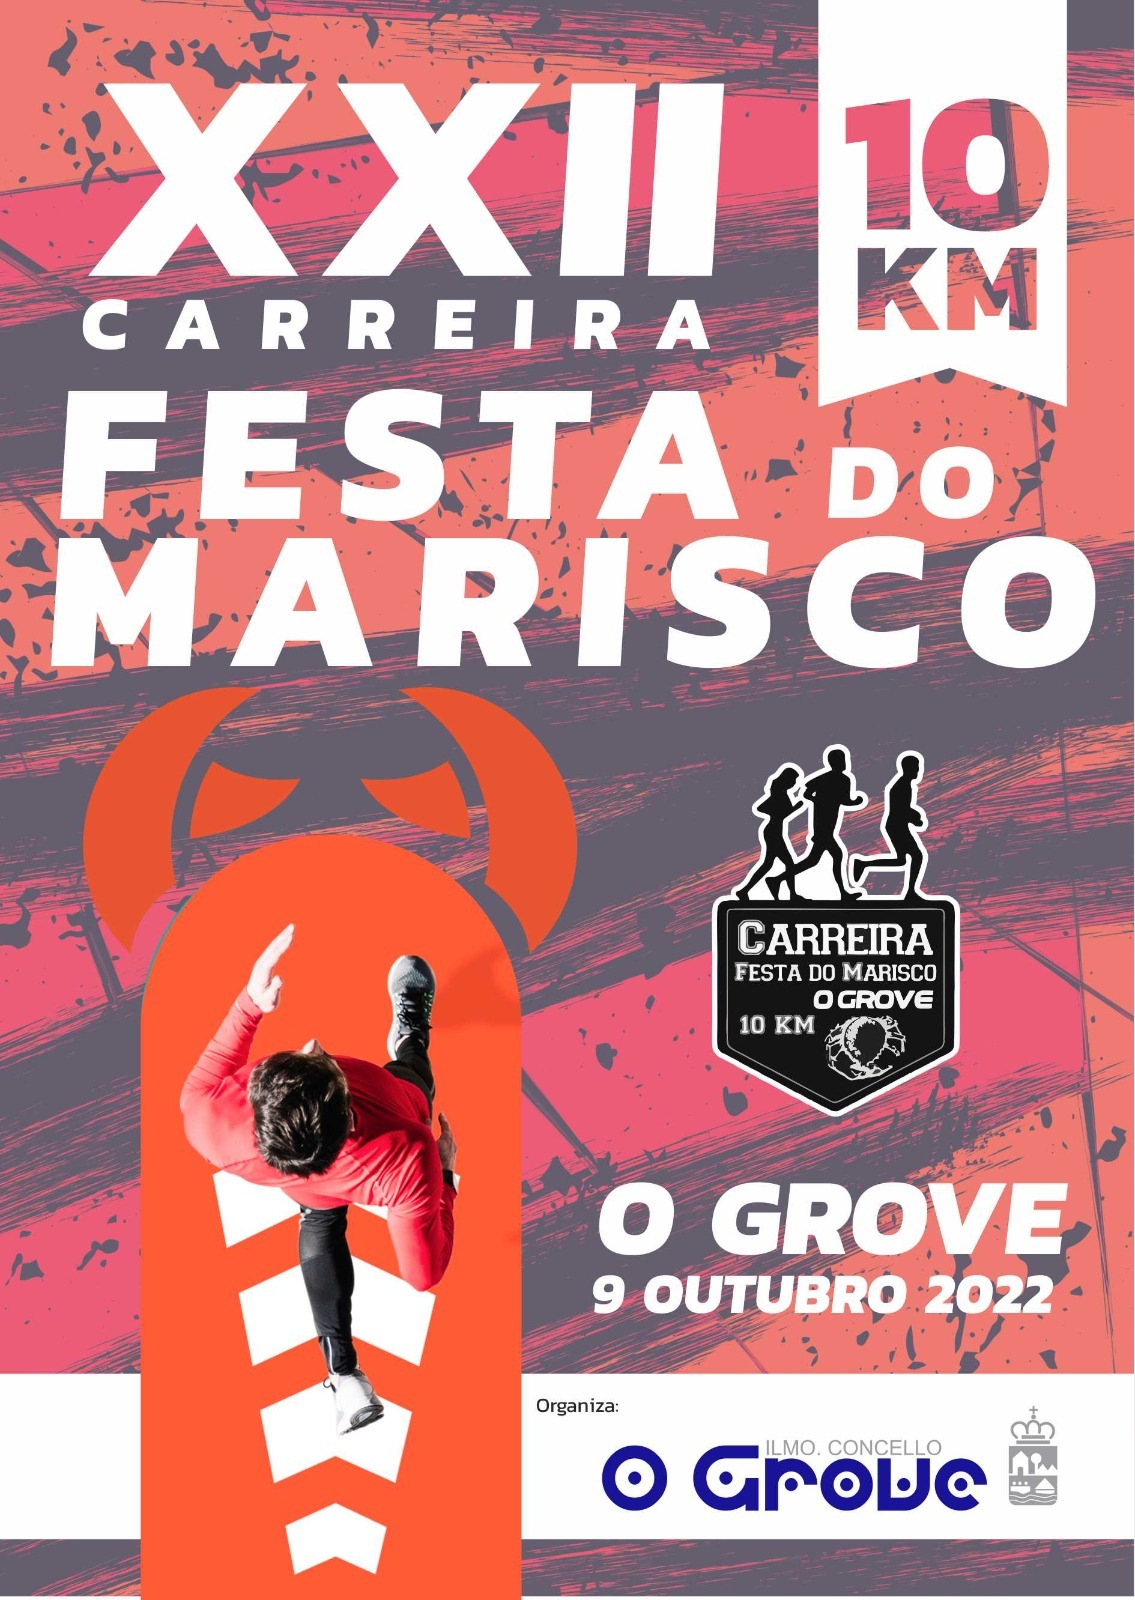 Event Poster XXII CARREIRA POPULAR FESTA DO MARISCO 2022